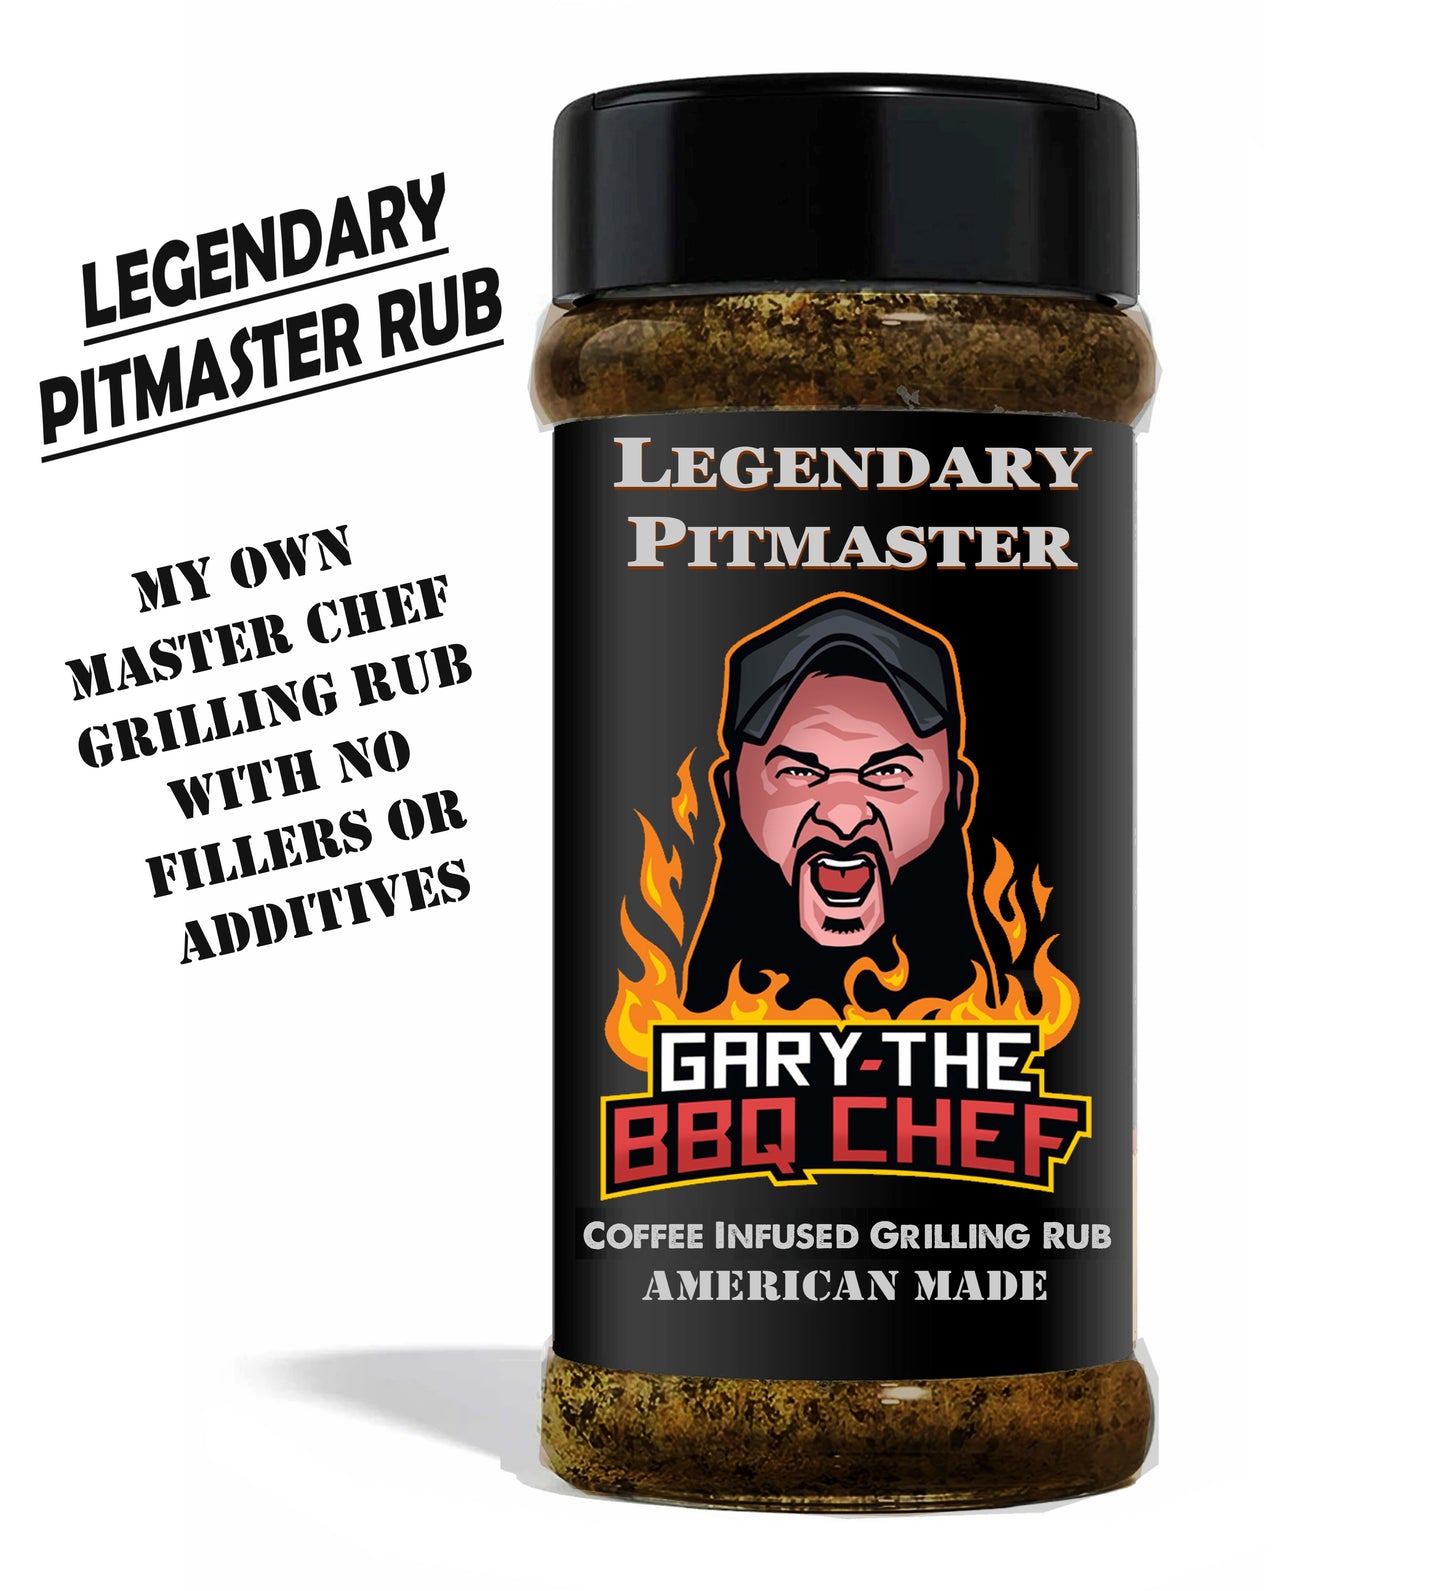 Legendary Pitmaster Rub